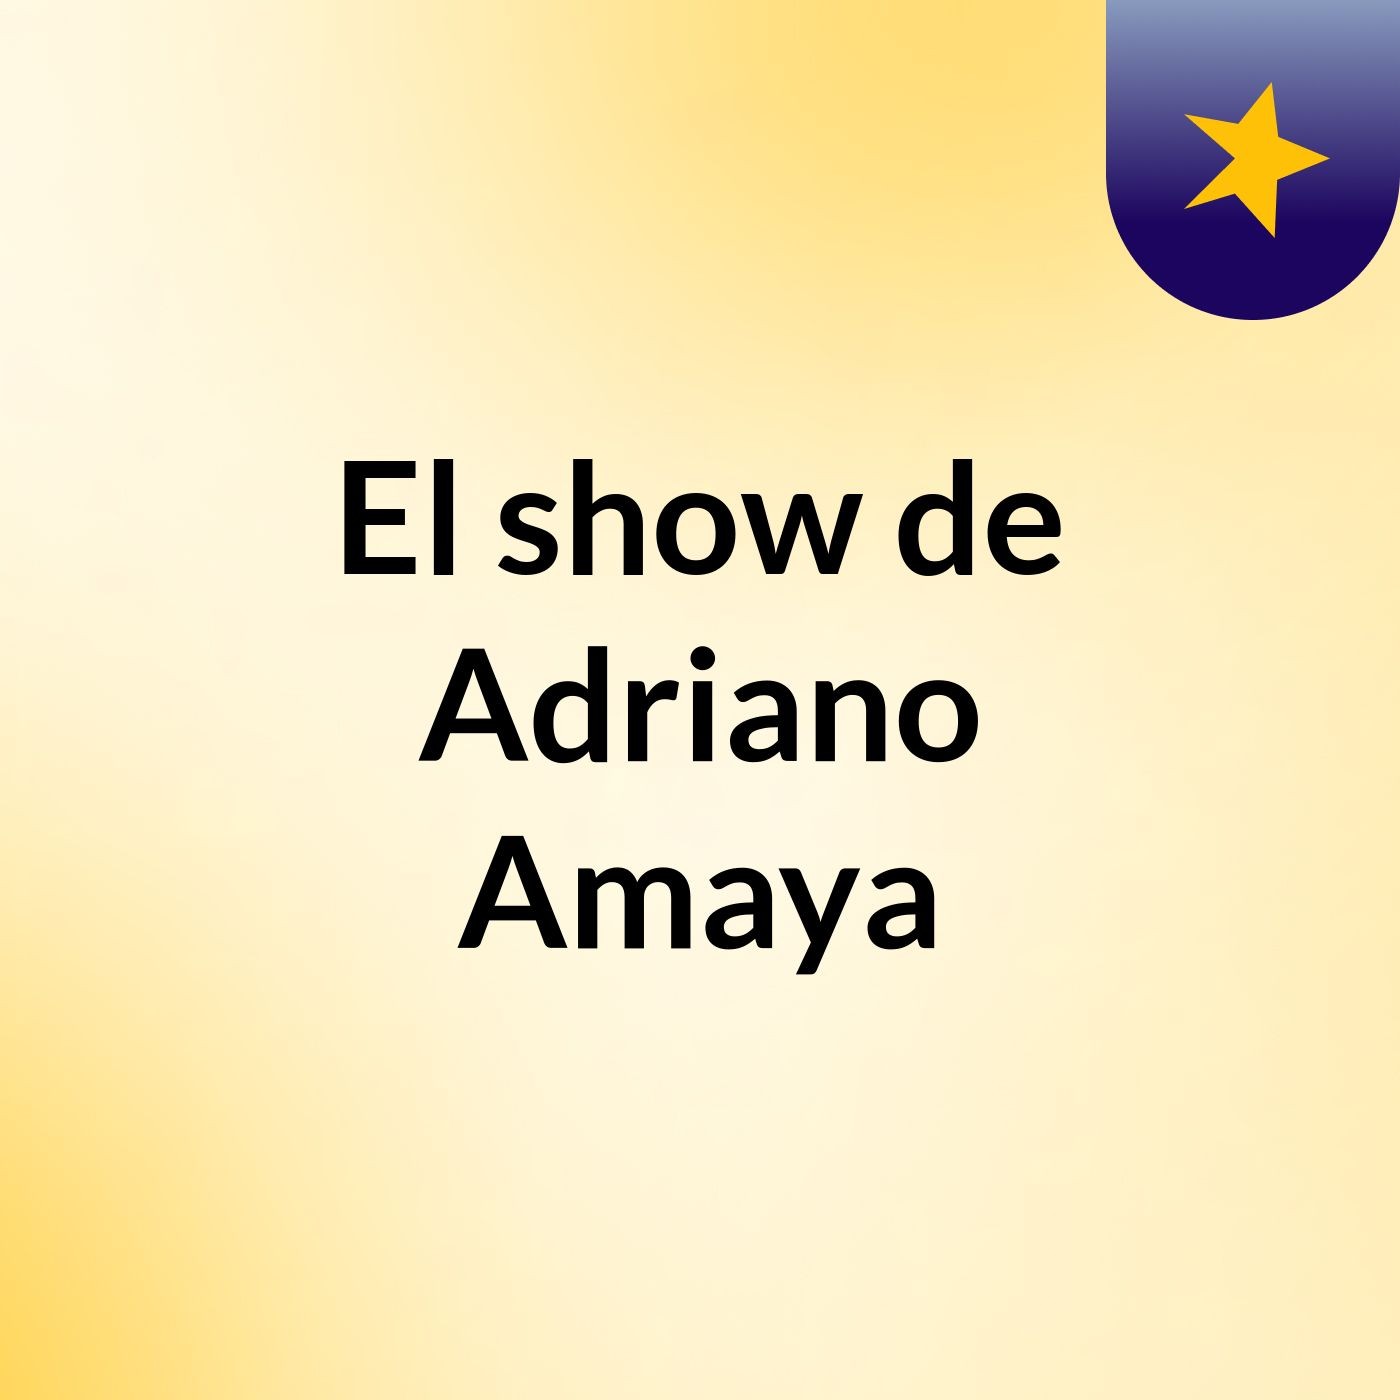 El show de Adriano Amaya